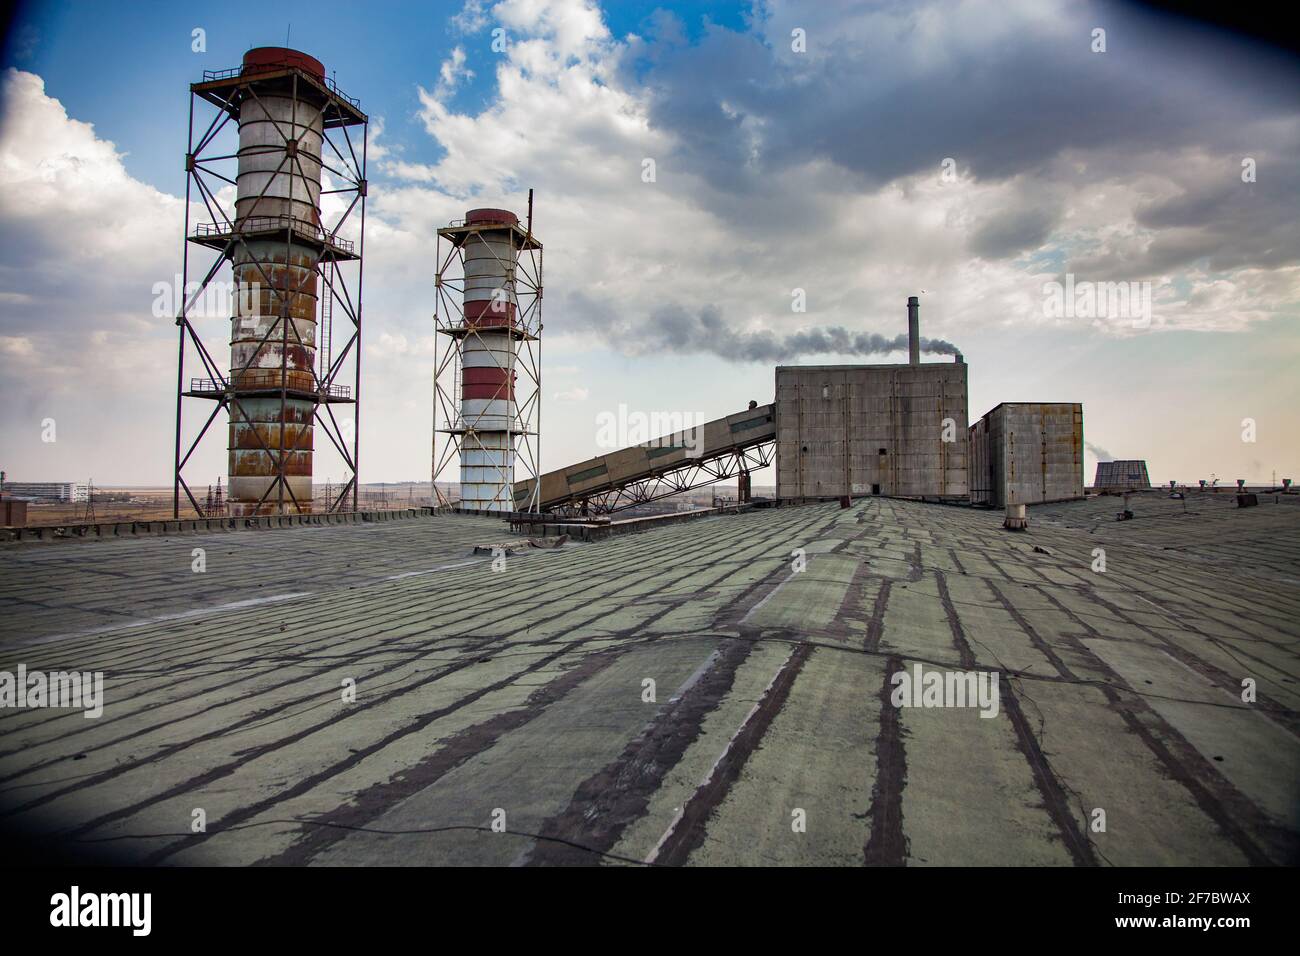 Veraltete sowjetische Bergbau- und Verarbeitungsanlage. Rauchstapel auf dem Dach und Industriegebäude im Hintergrund. Stockfoto